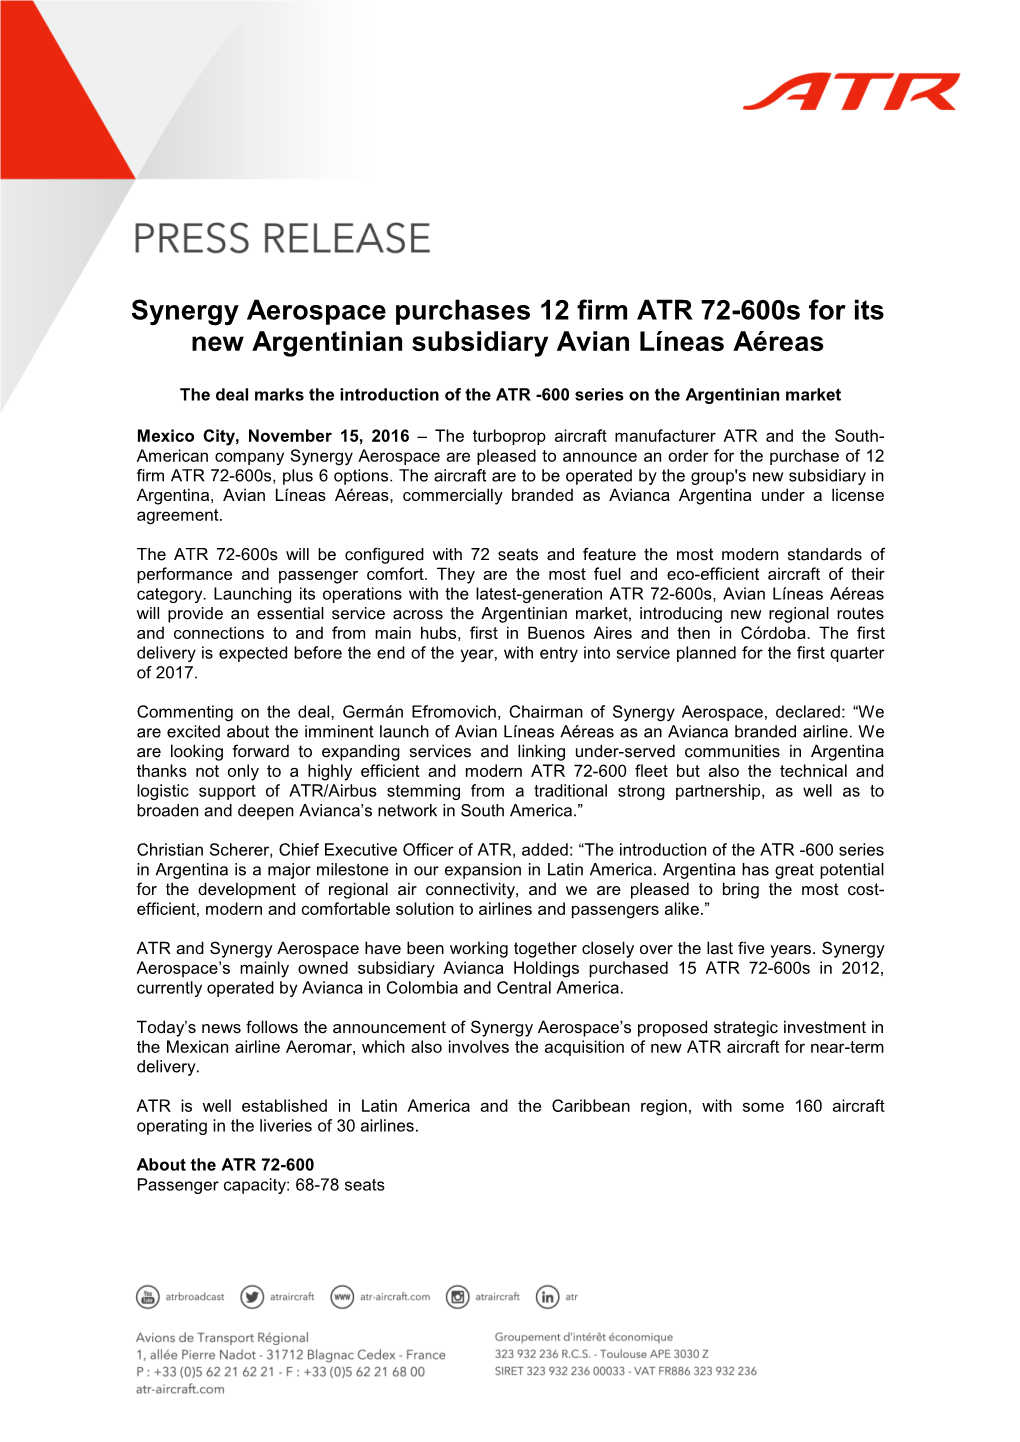 Synergy Aerospace Purchases 12 Firm ATR 72-600S for Its New Argentinian Subsidiary Avian Líneas Aéreas